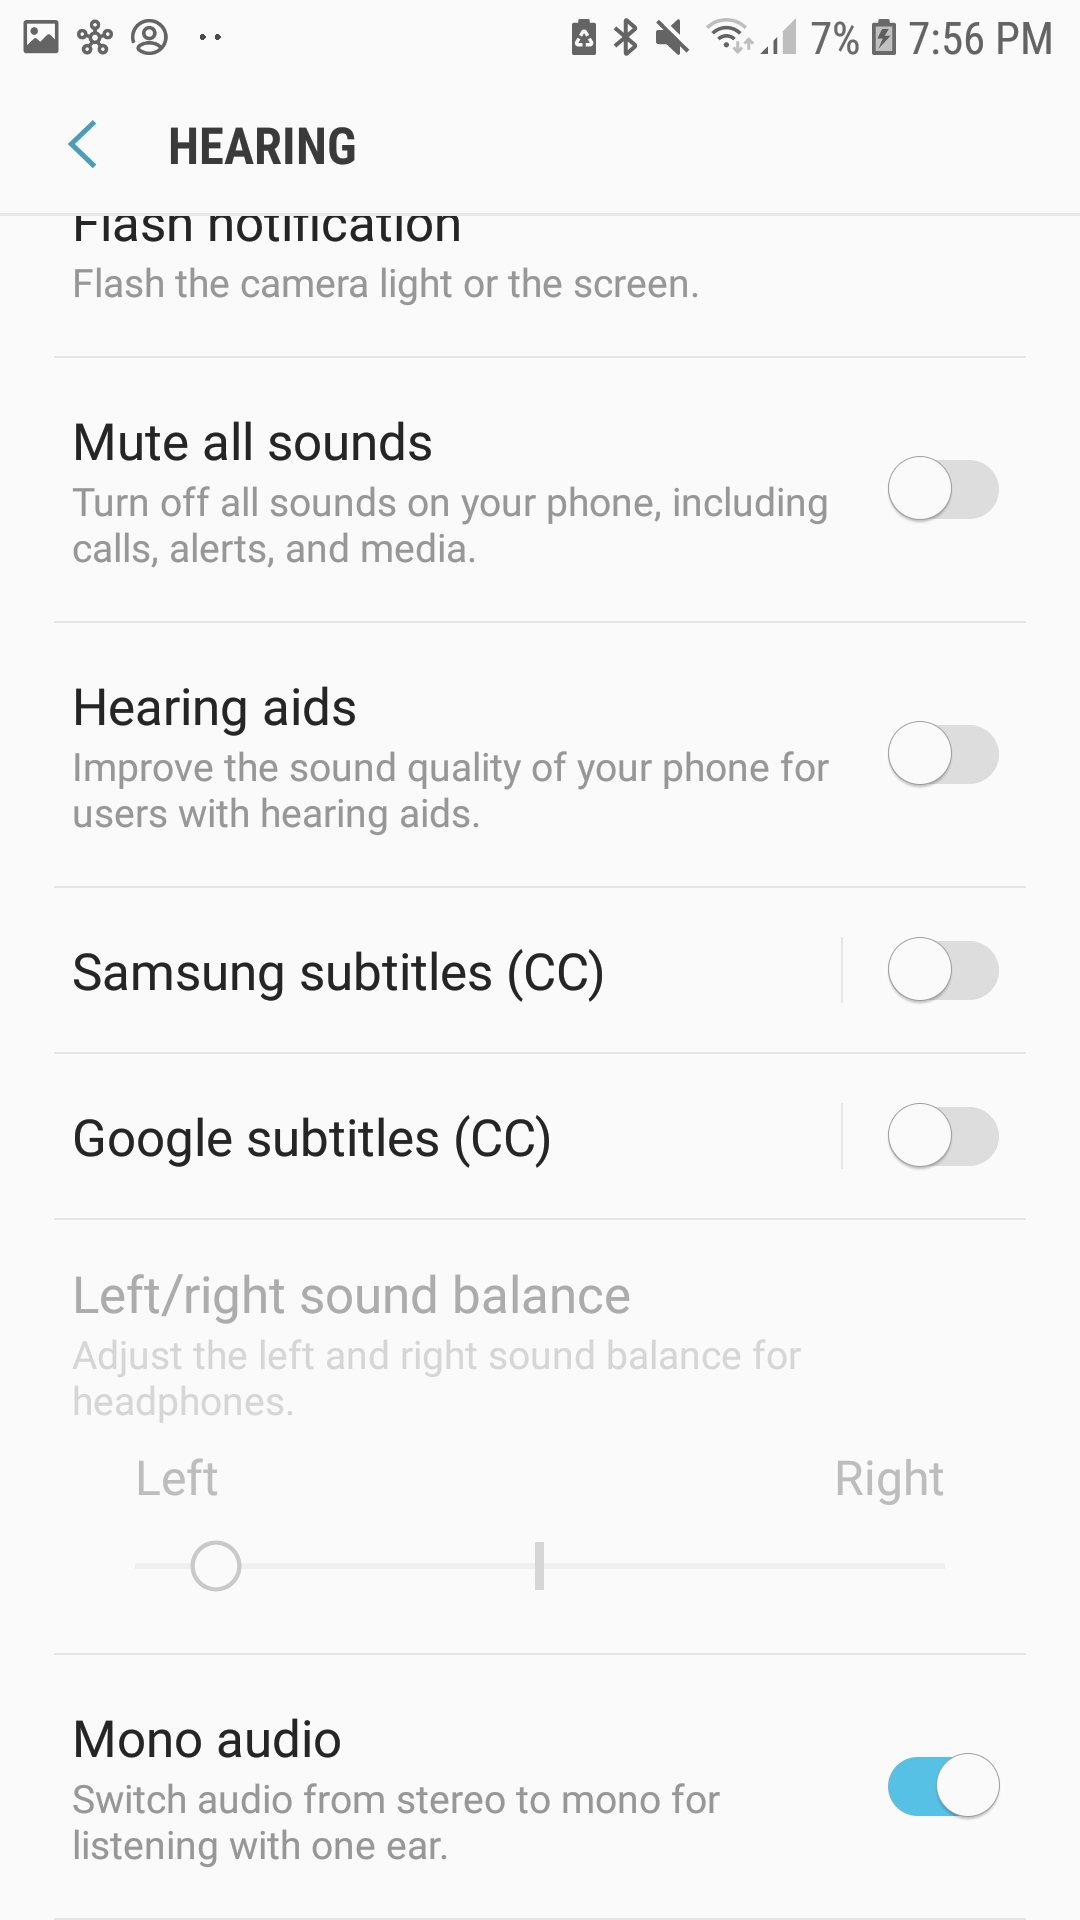 Cómo equilibrar el audio en Android 4